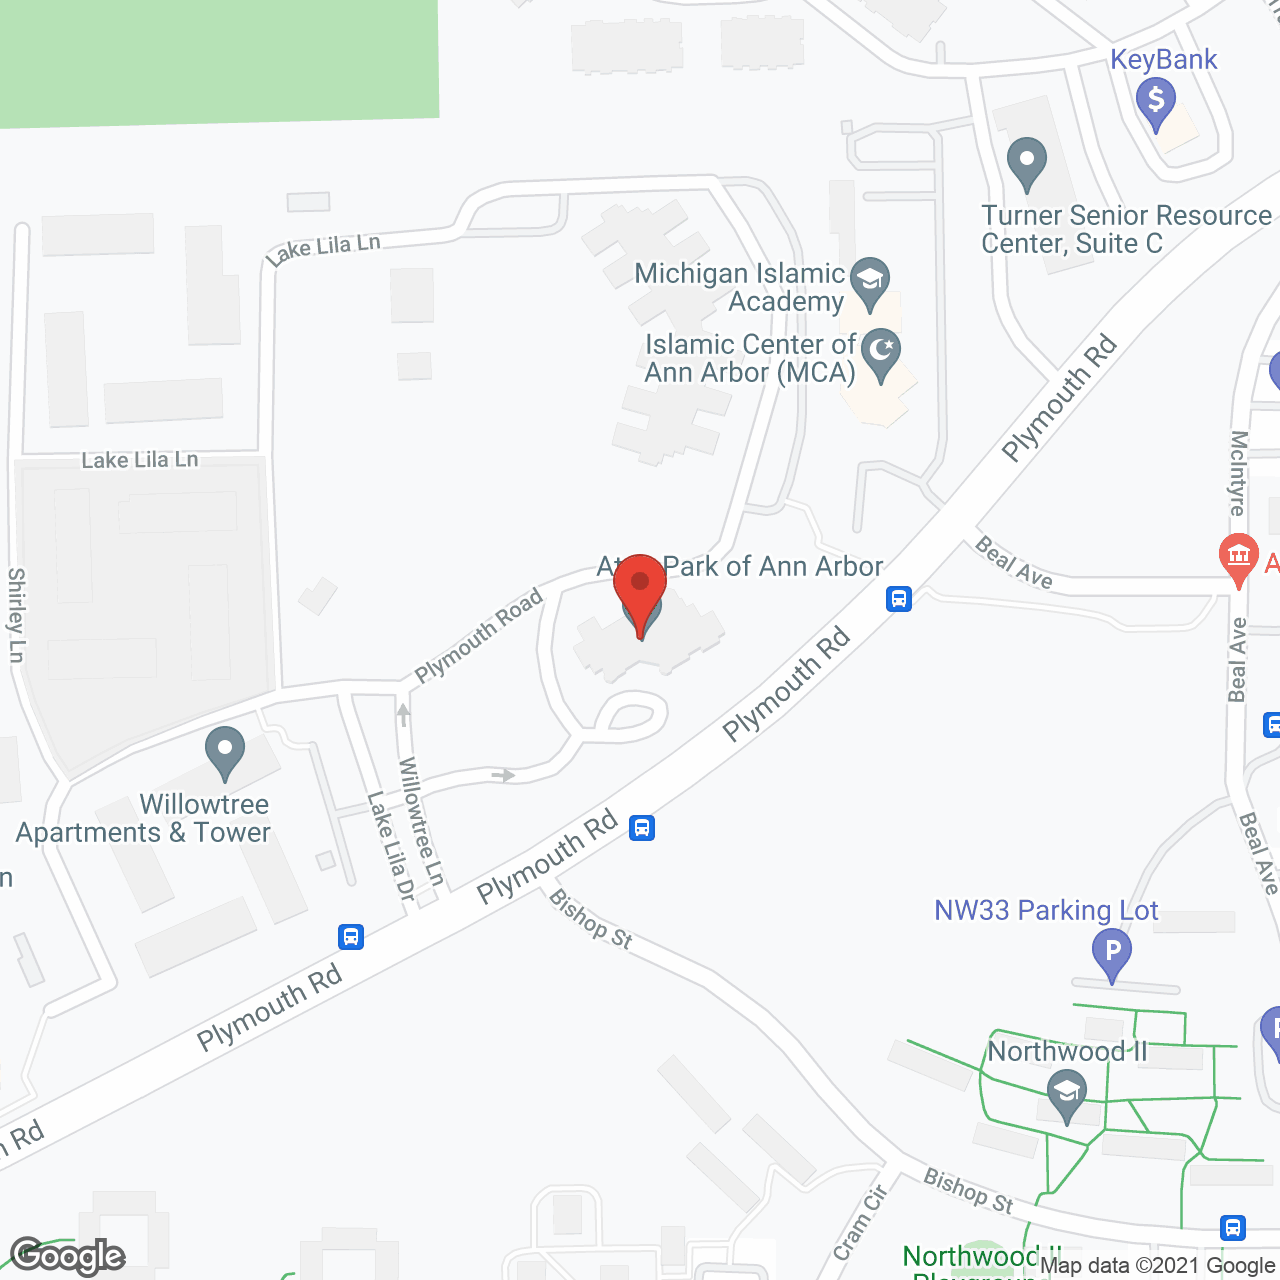 Atria Park of Ann Arbor in google map